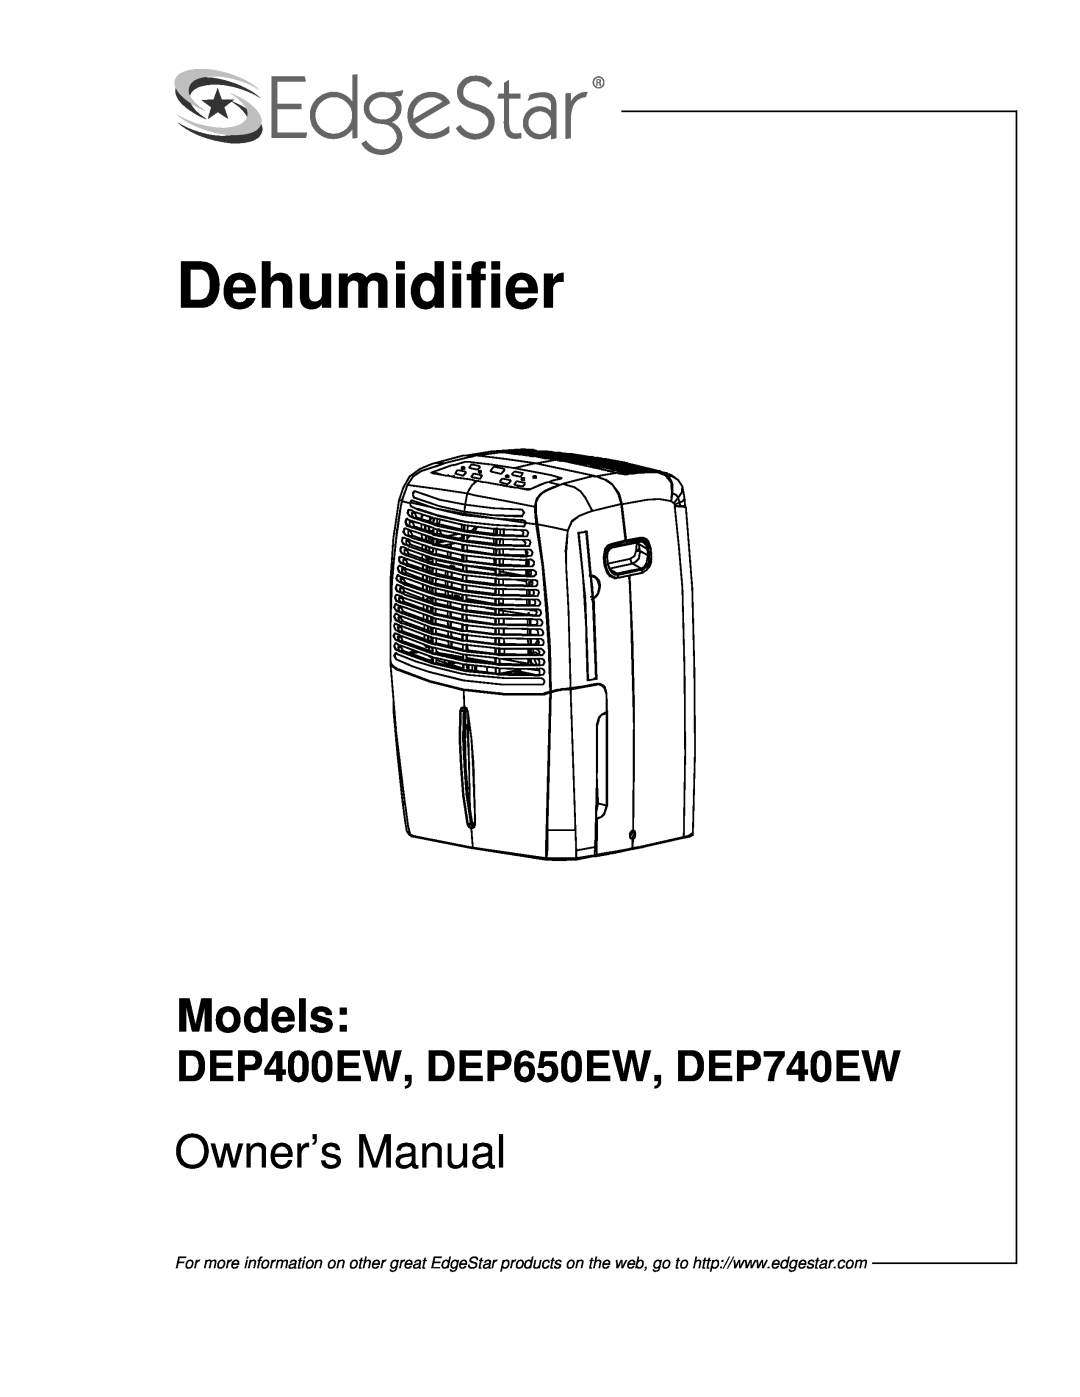 EdgeStar owner manual Dehumidifier, Models, DEP400EW, DEP650EW, DEP740EW 